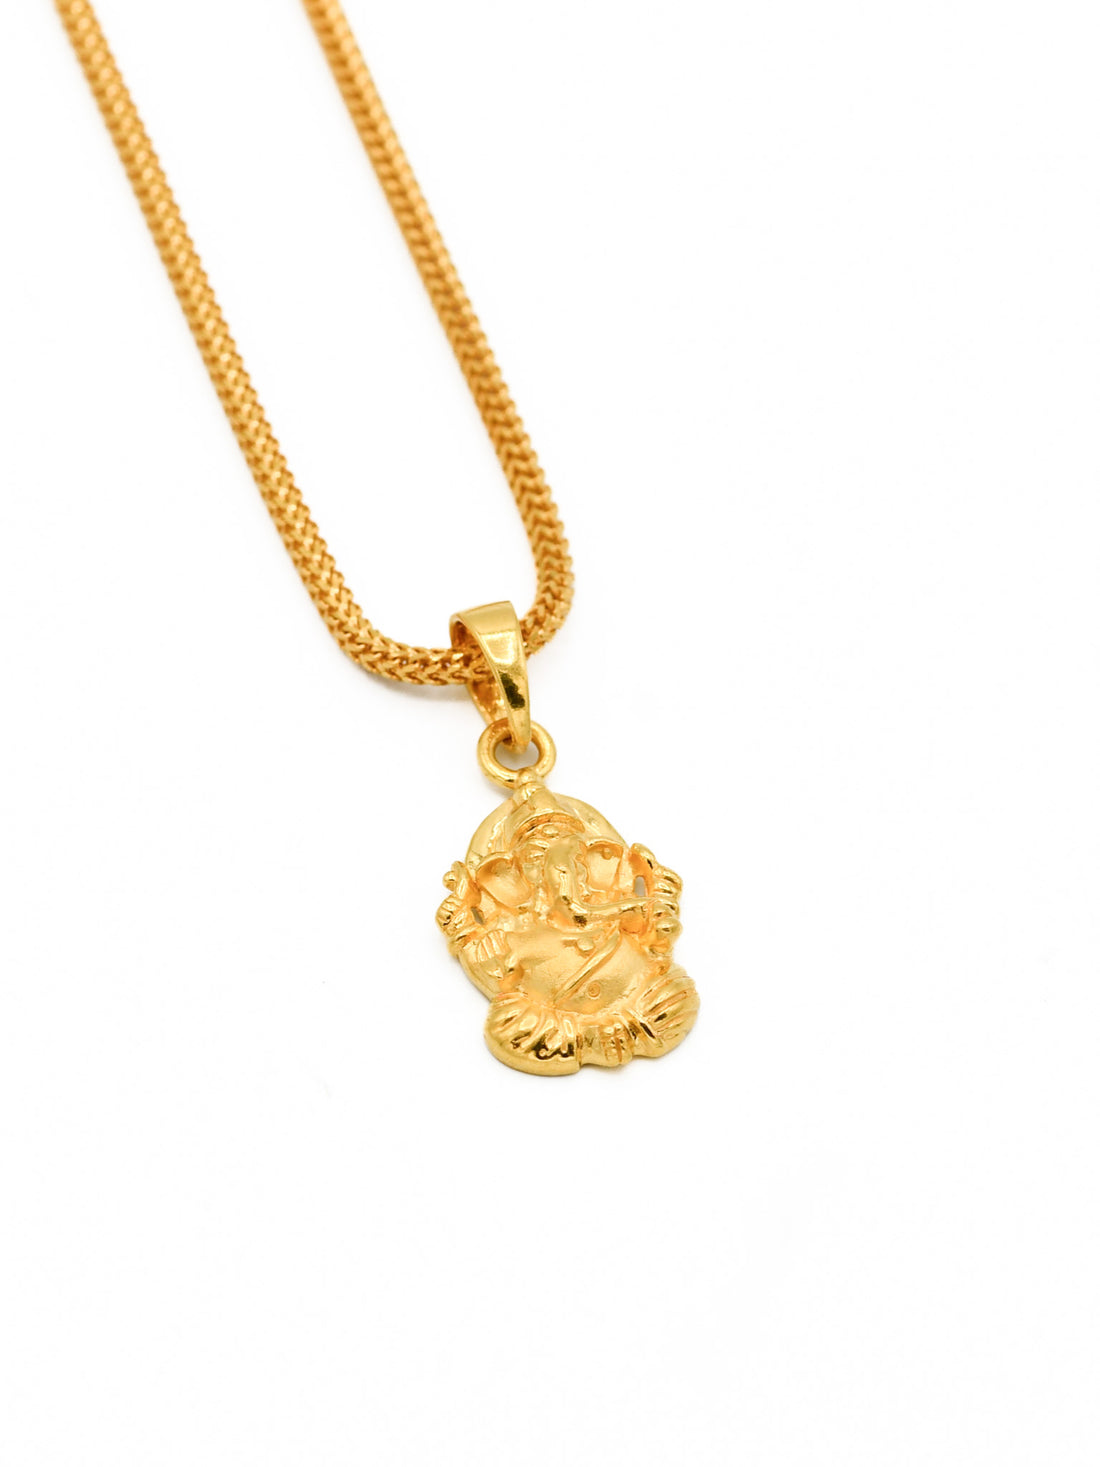 22ct Gold Ganesh Pendant - Roop Darshan